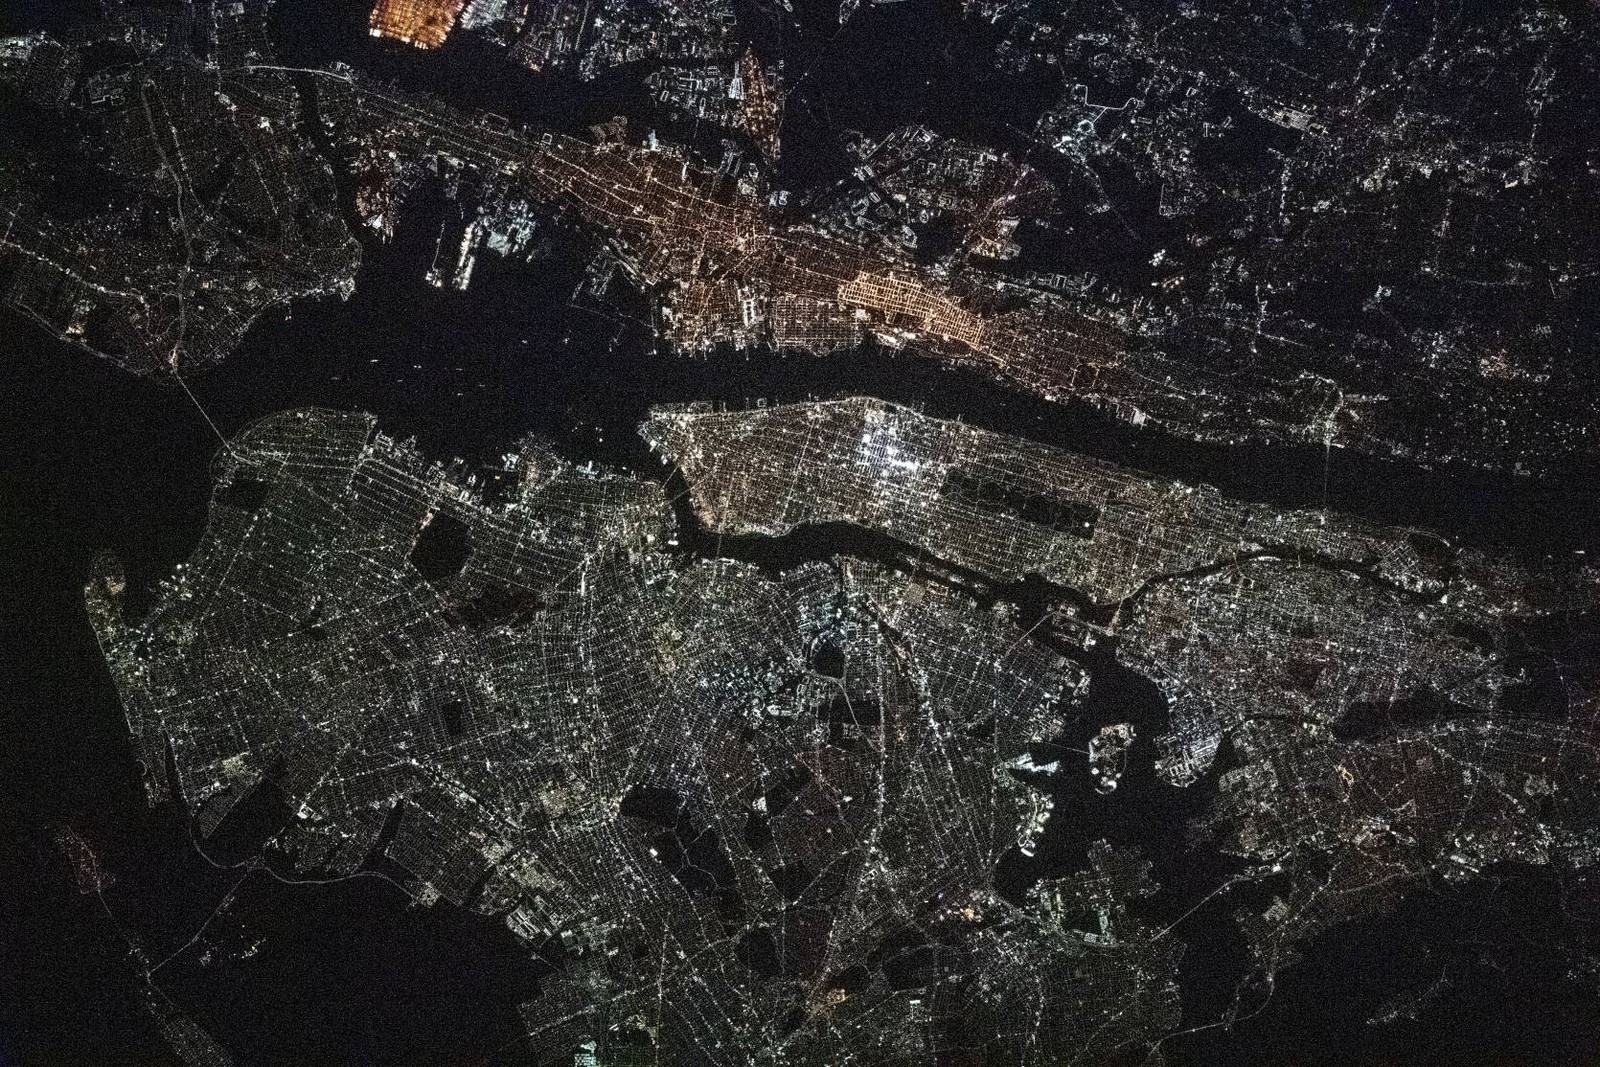 Fotografia noturna área metropolitana de Nova York e Nova Jersey tirada em 30 de dezembro de 2020 a partir da Estação Espacial Internacional, a cerca de 420 quilômetros acima da Pensilvânia